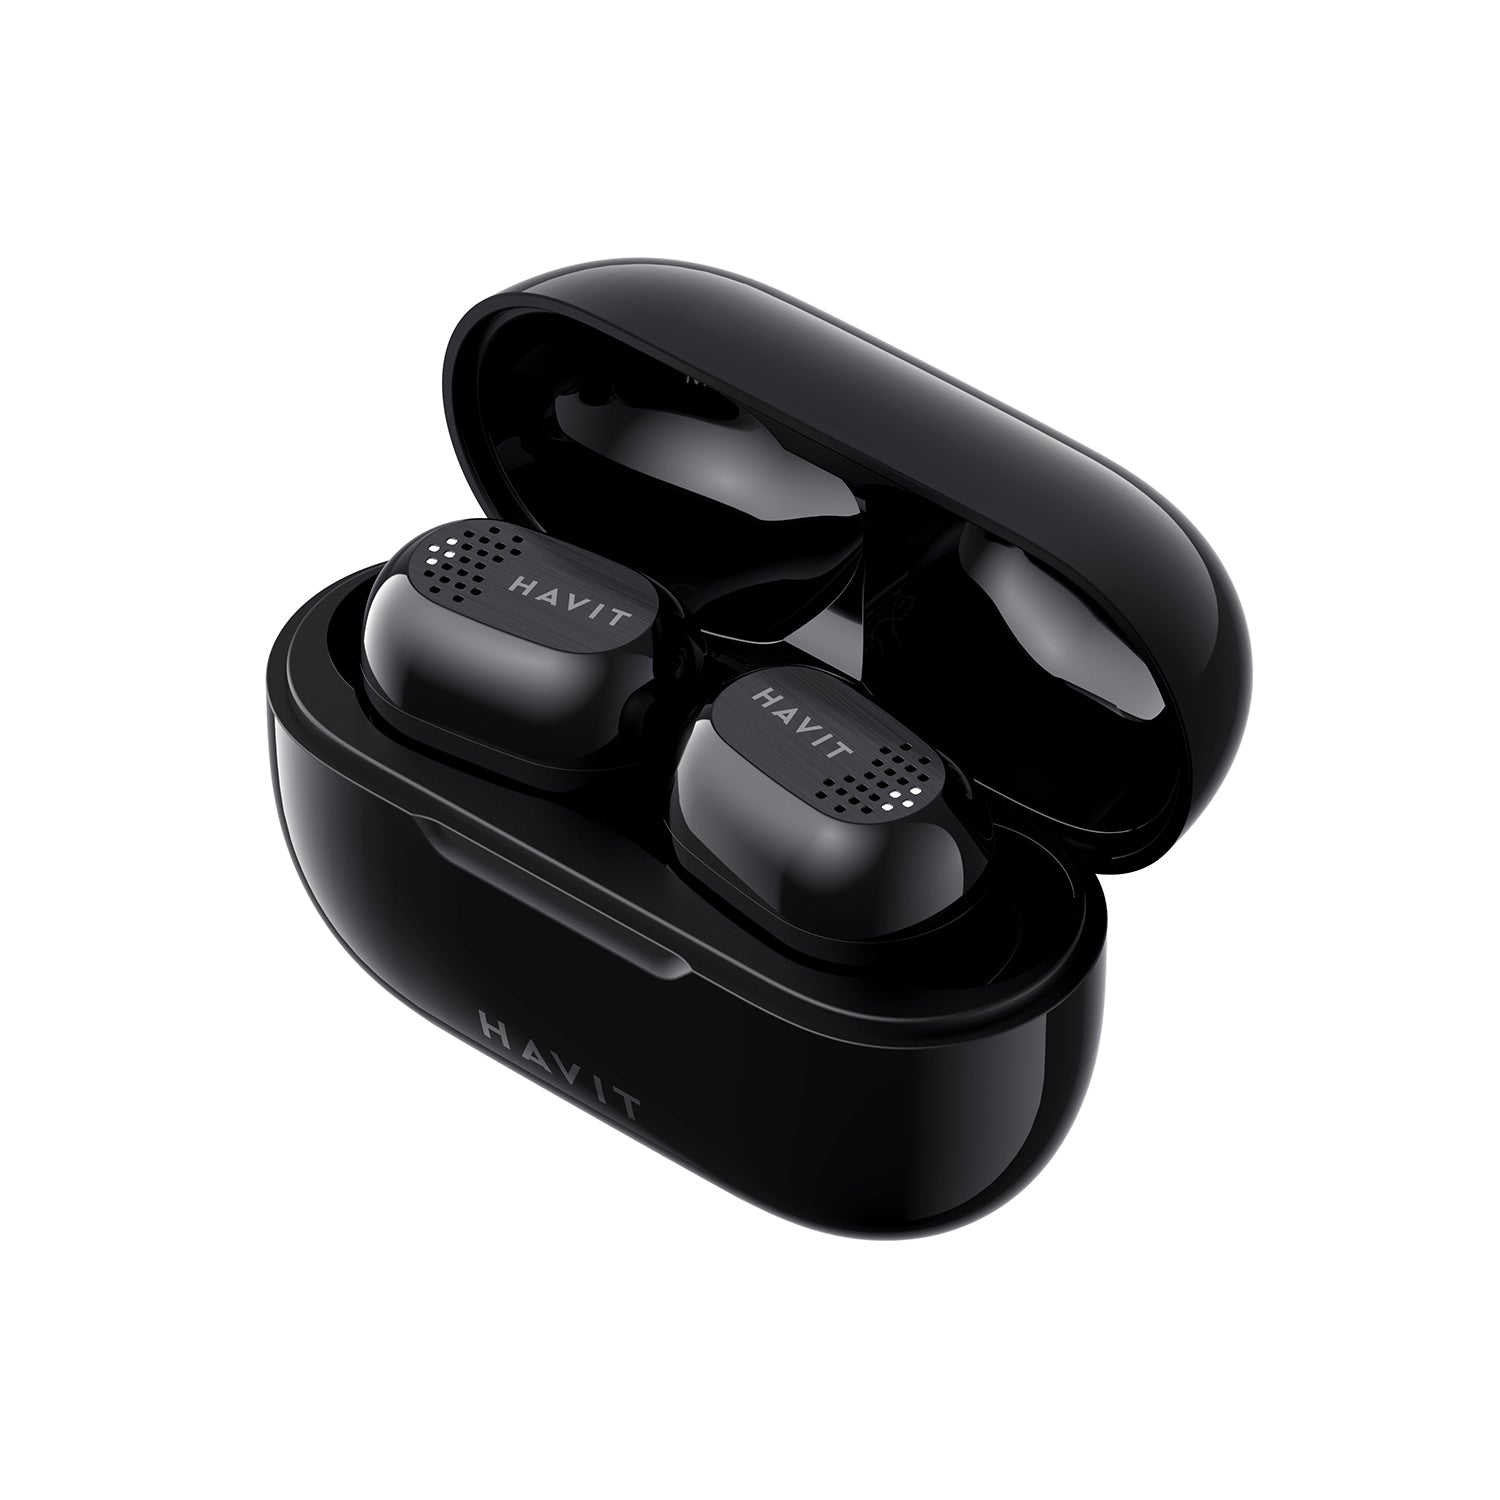  true wireless stereo earbuds best deals